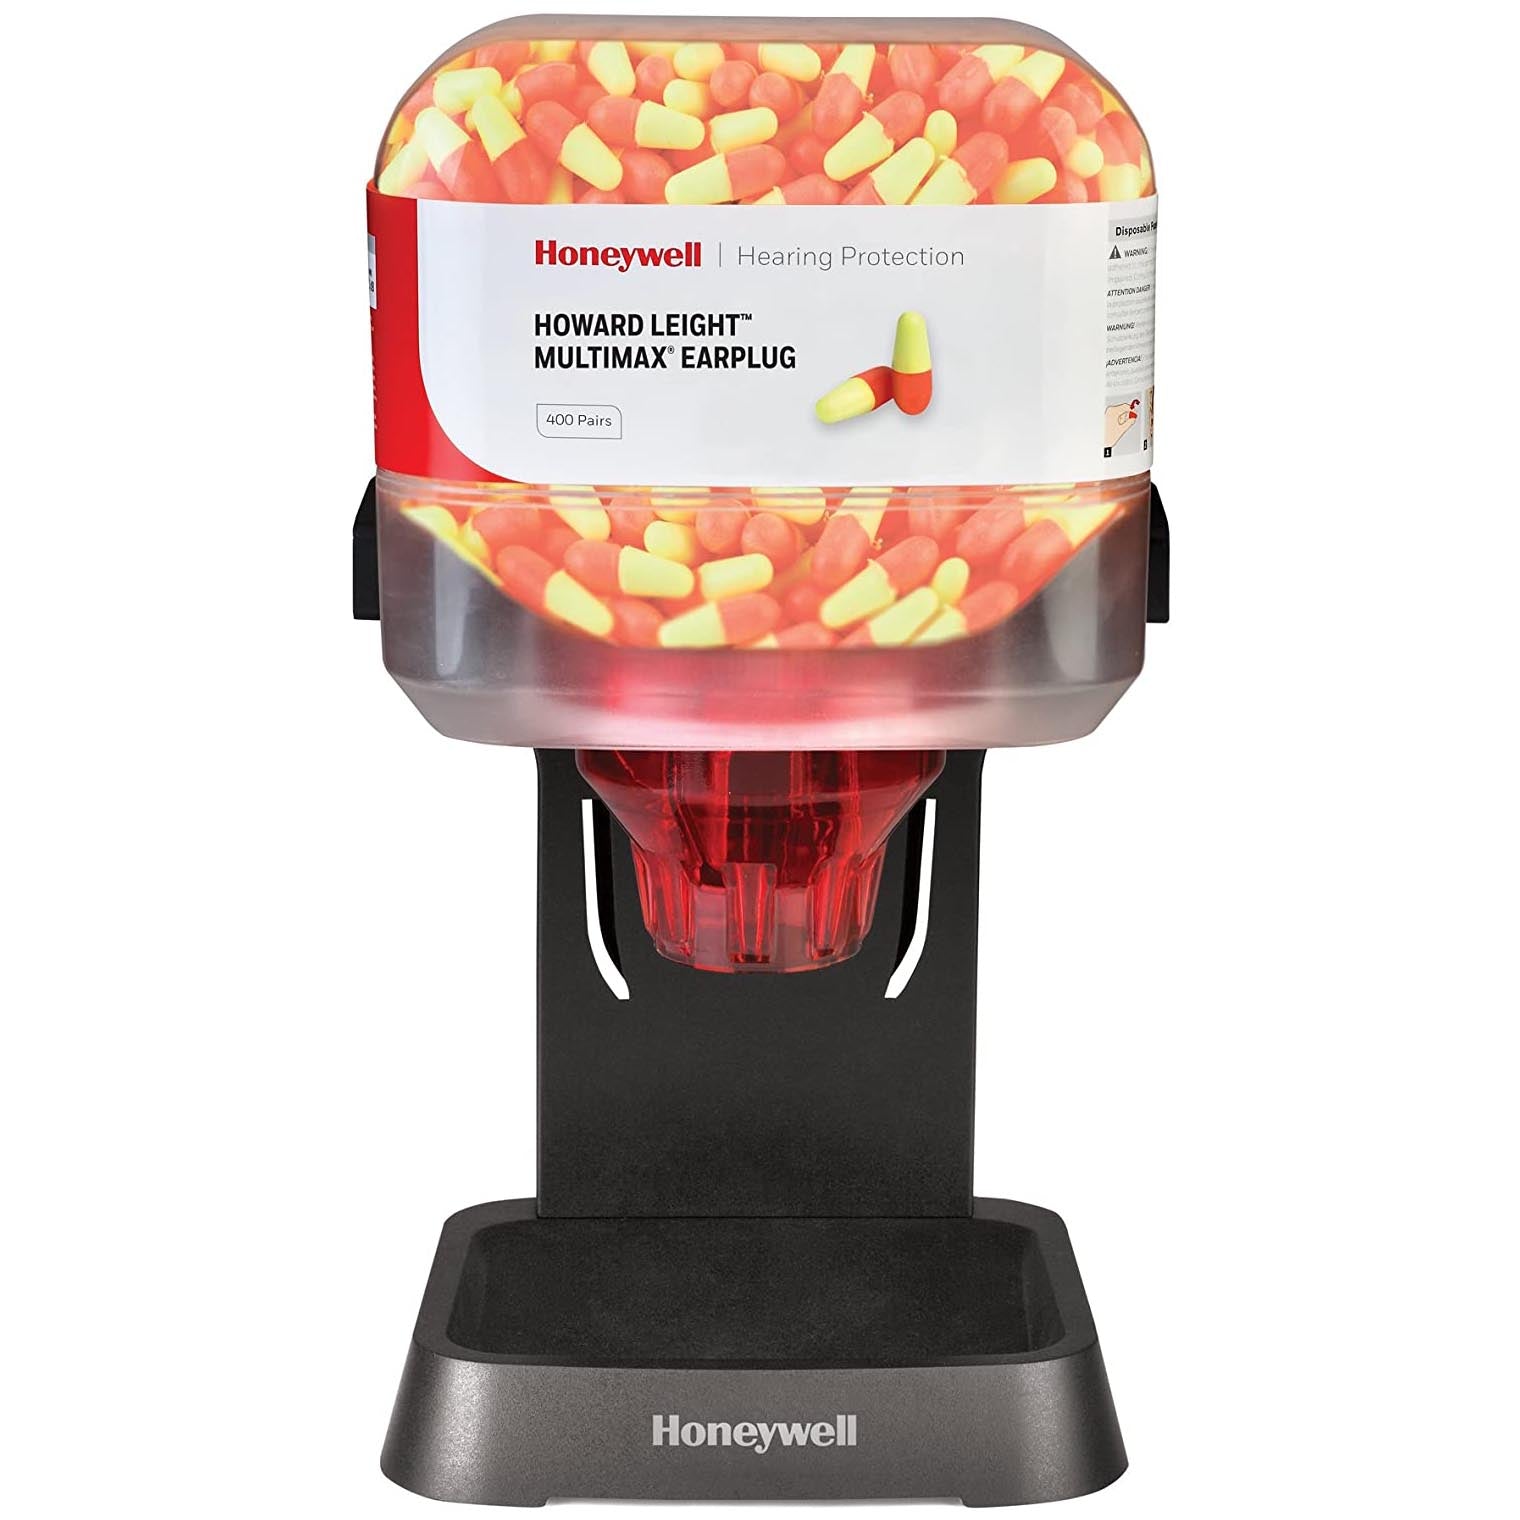 Honeywell Howard Leight MultiMax Earplug Refill Canister for HL400 Dispenser 400 pairs